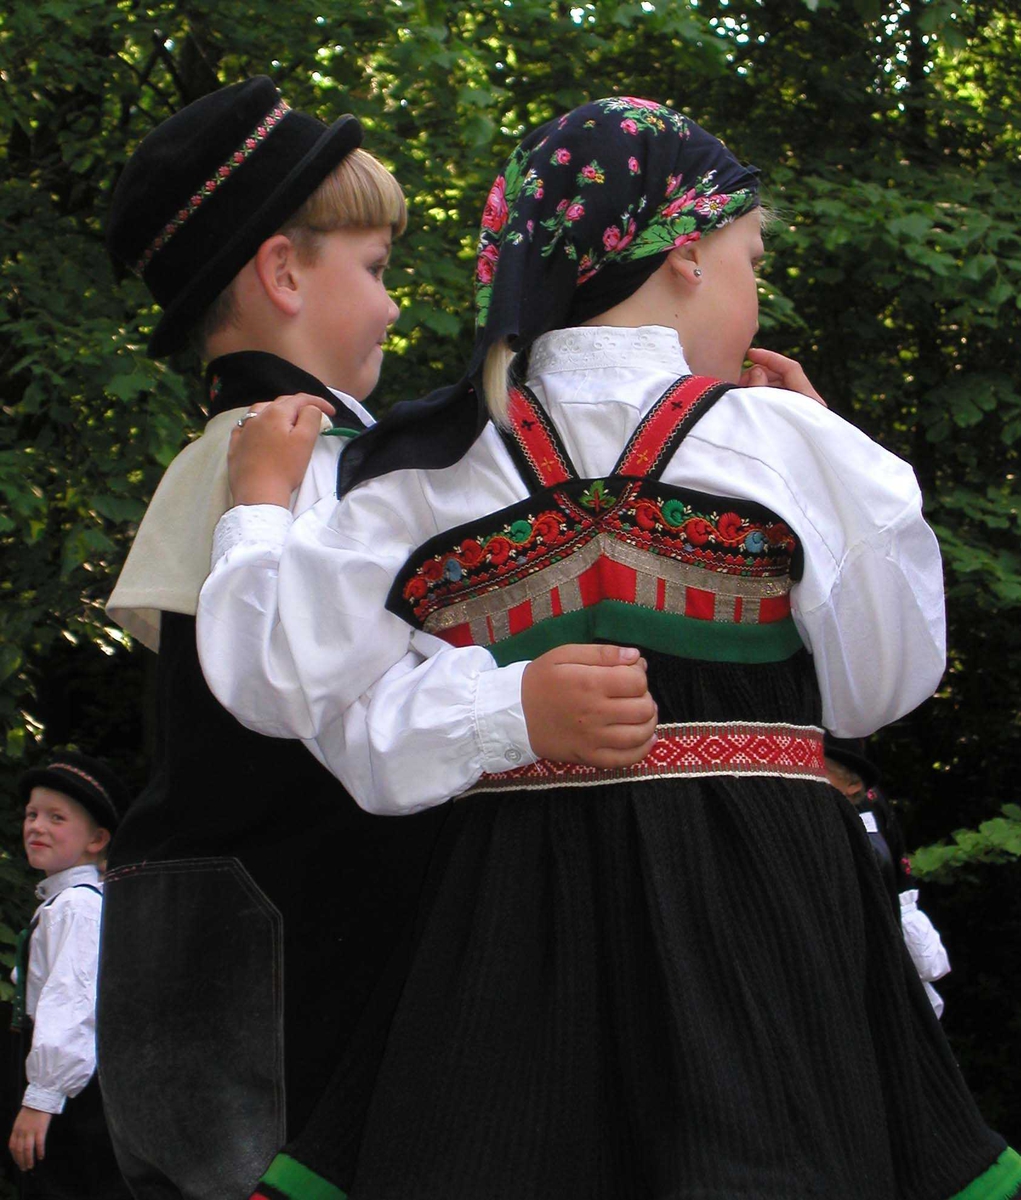 Norsk Folkemuseums dansegruppe, kledd i folkedrakt, danser folkedans i Friluftsteateret, NF239. Dansende par sett bakfra.